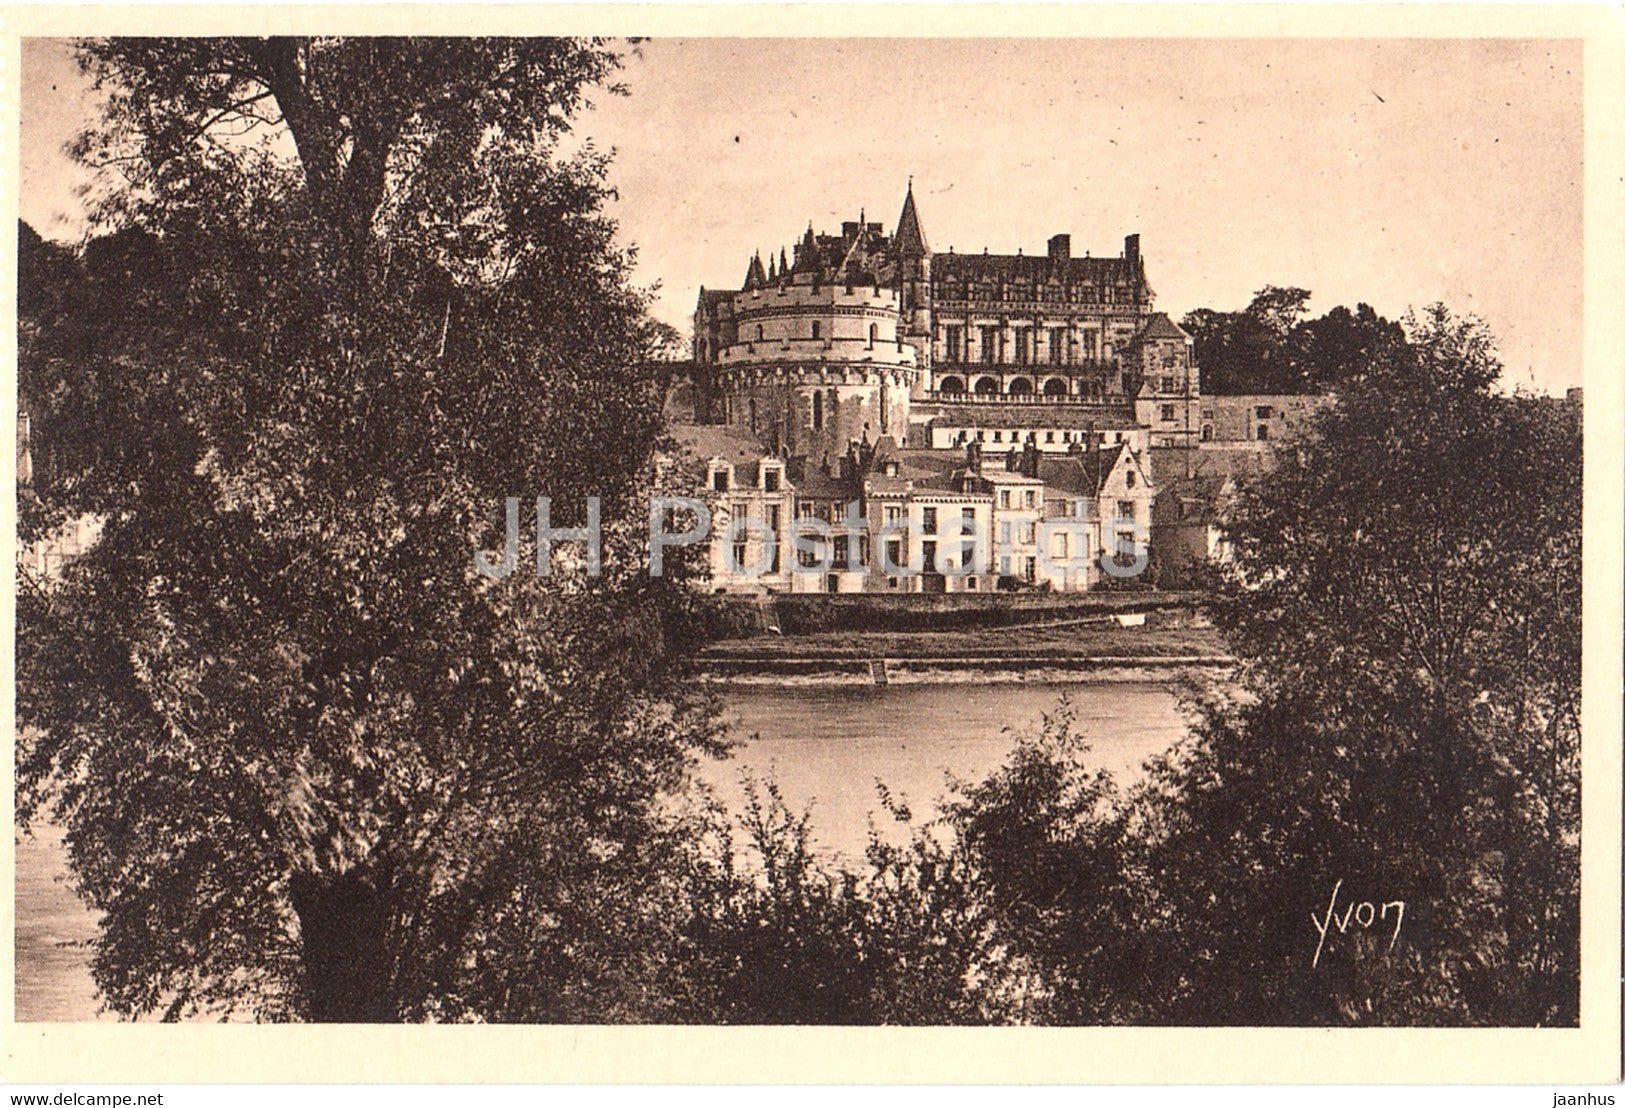 Chateau d'Amboise - Vue Generale prise des Bords de la Loire - 24 - castle - old postcard - France - unused - JH Postcards